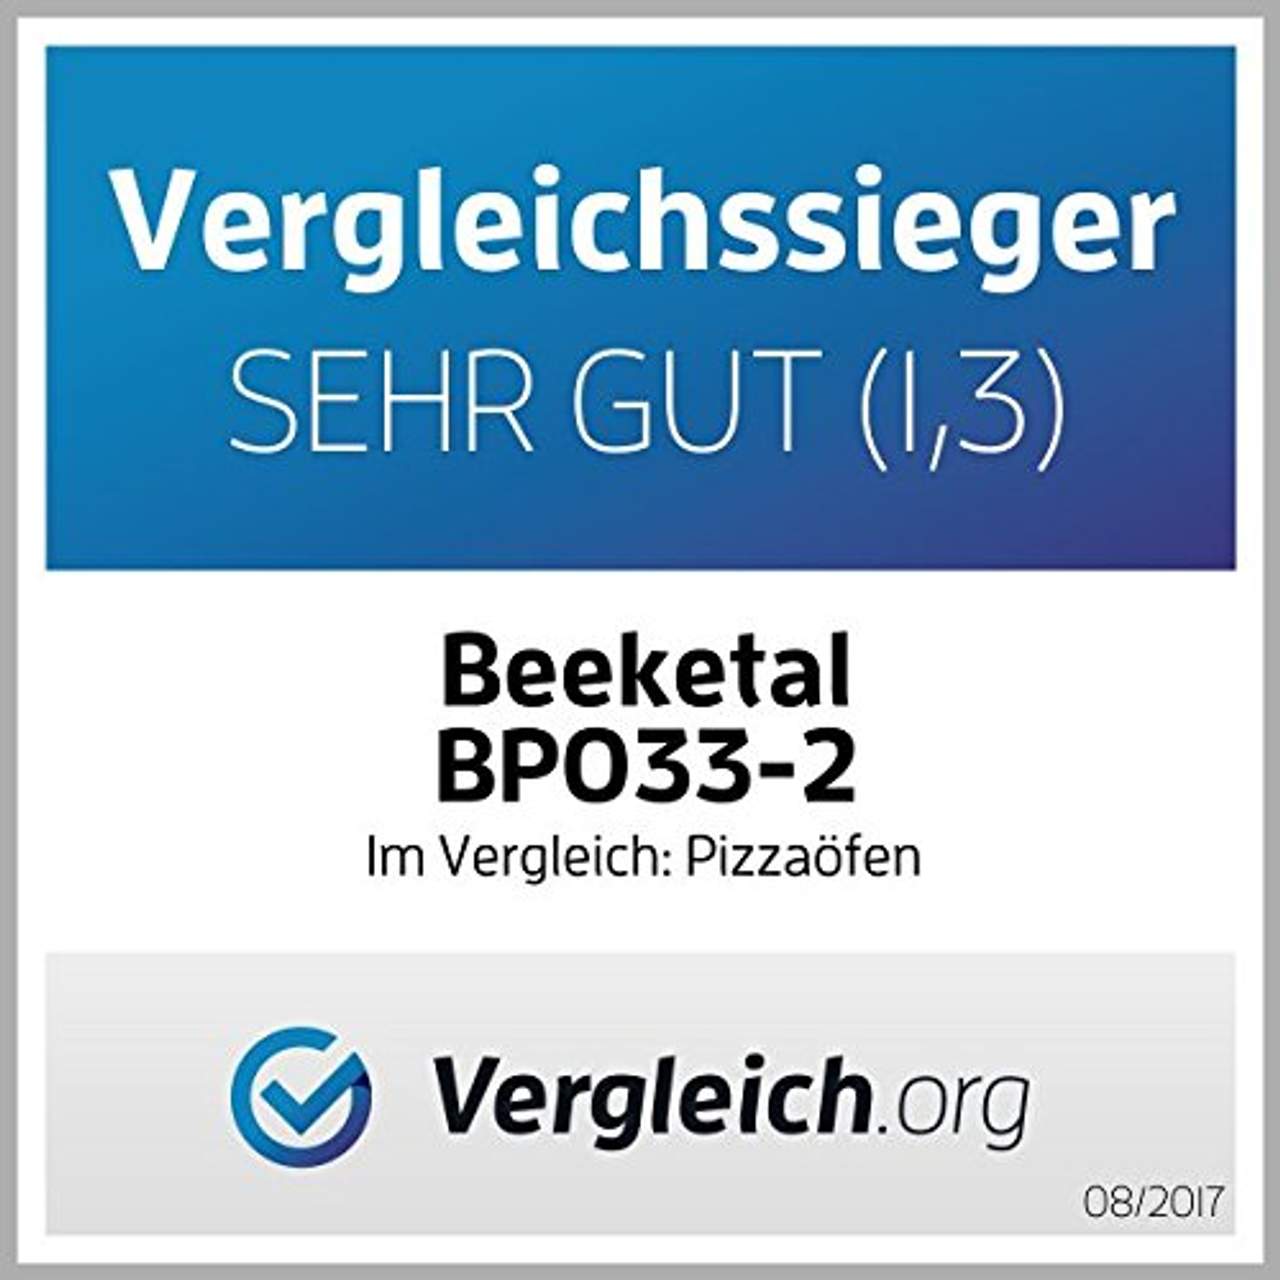 Beeketal 'BPO33-2' Profi Doppel Kammer Pizzaofen